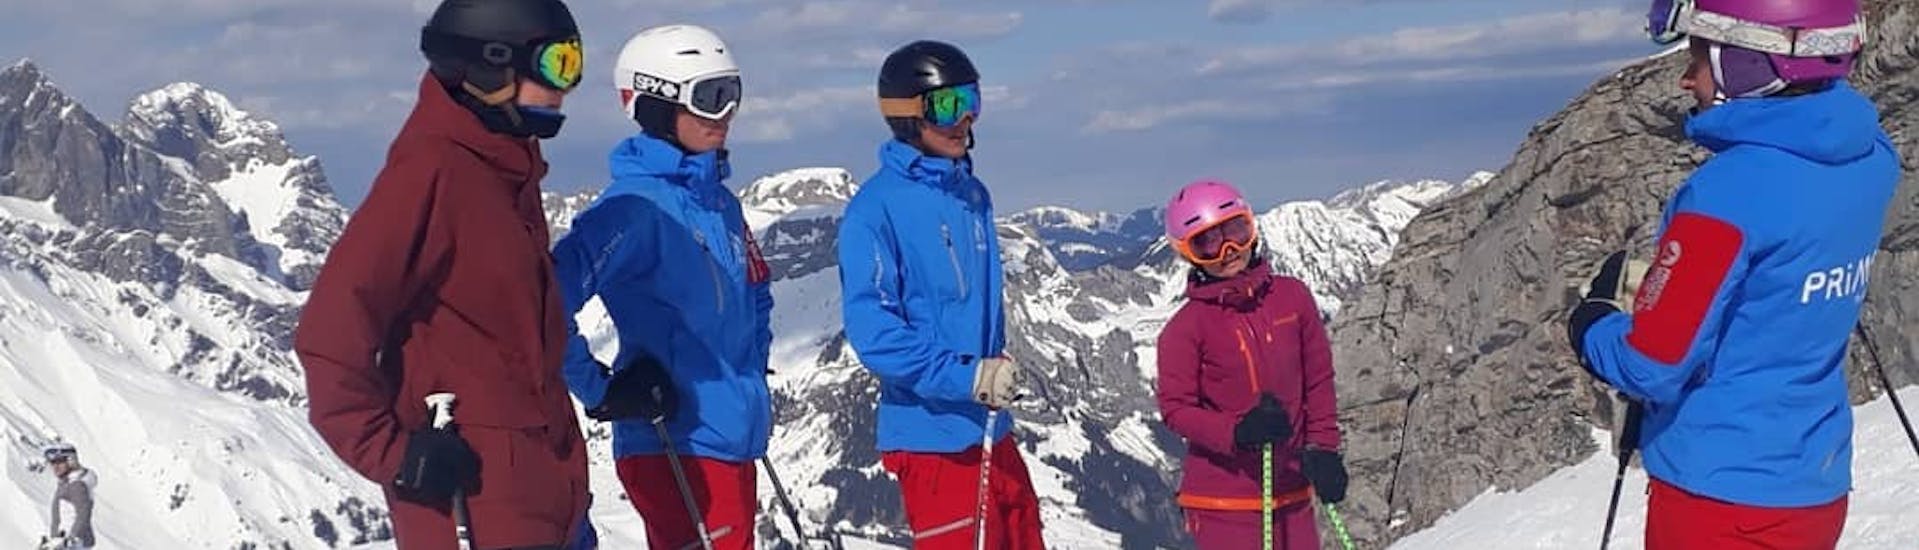 Clases de esquí para adultos a partir de 17 años para todos los niveles.